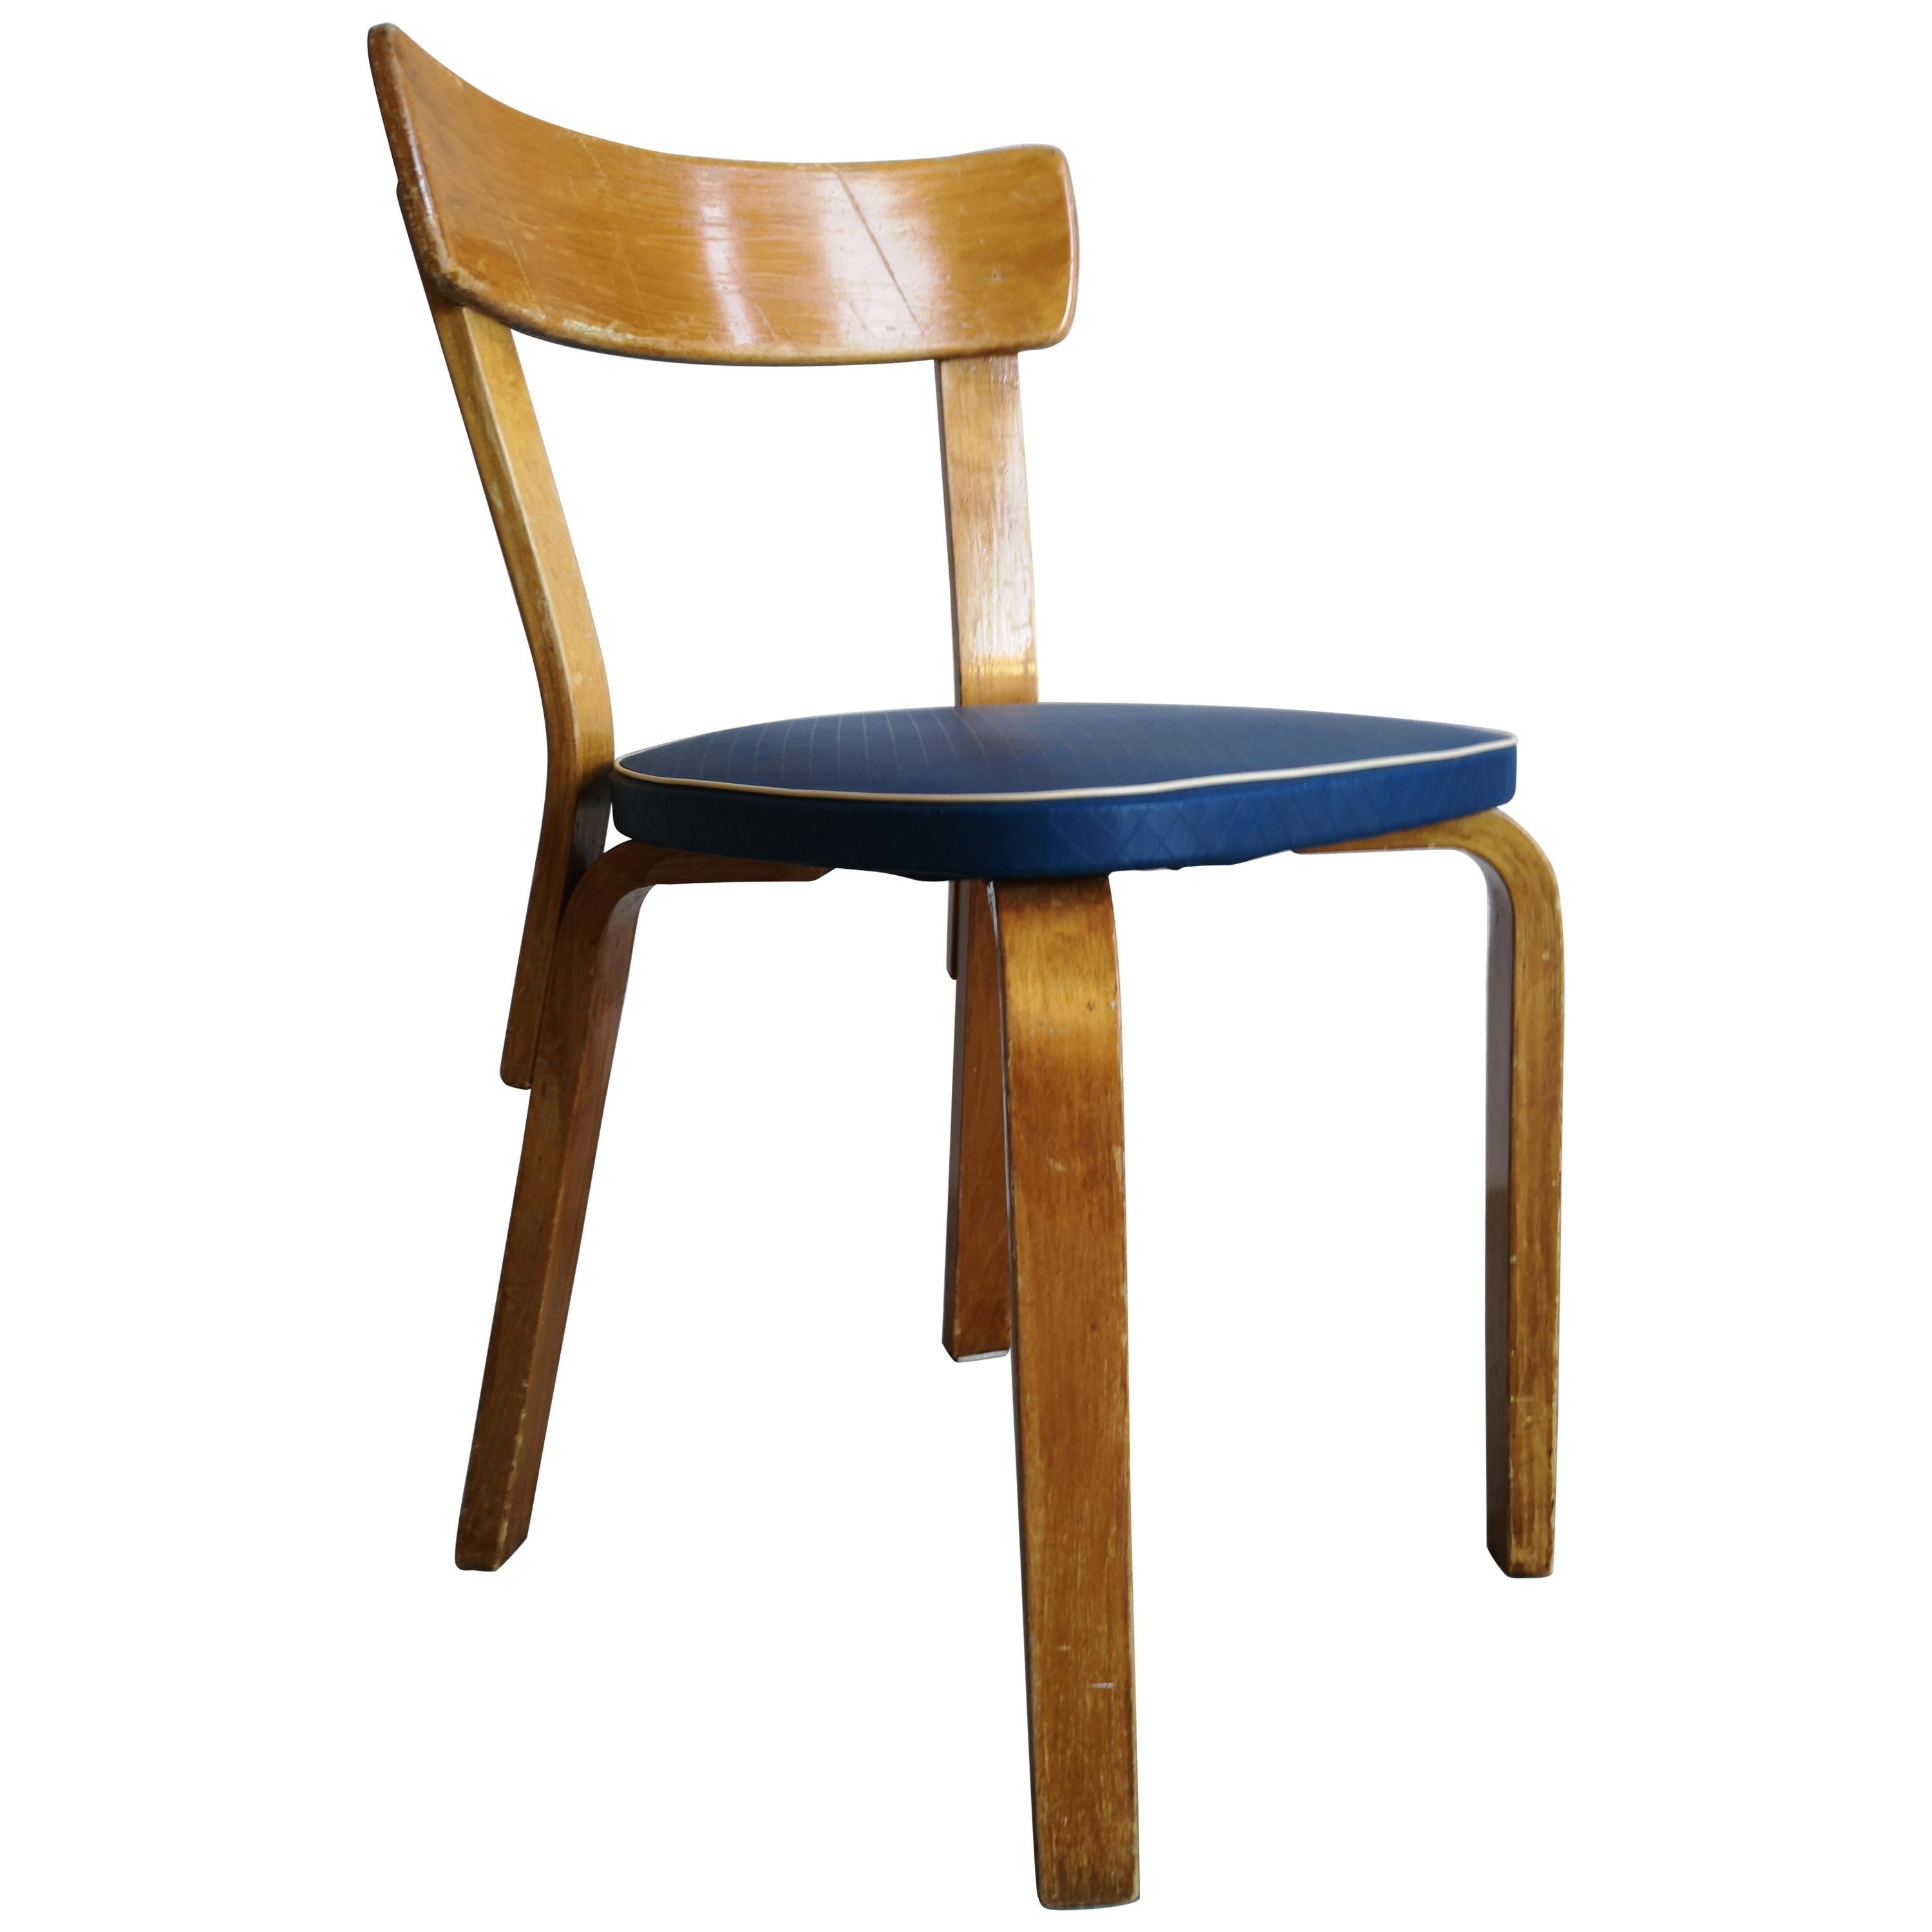 Alvar Aalto/Artek Original Vinyl Upholstered Chair Model 69, 1950s For Sale